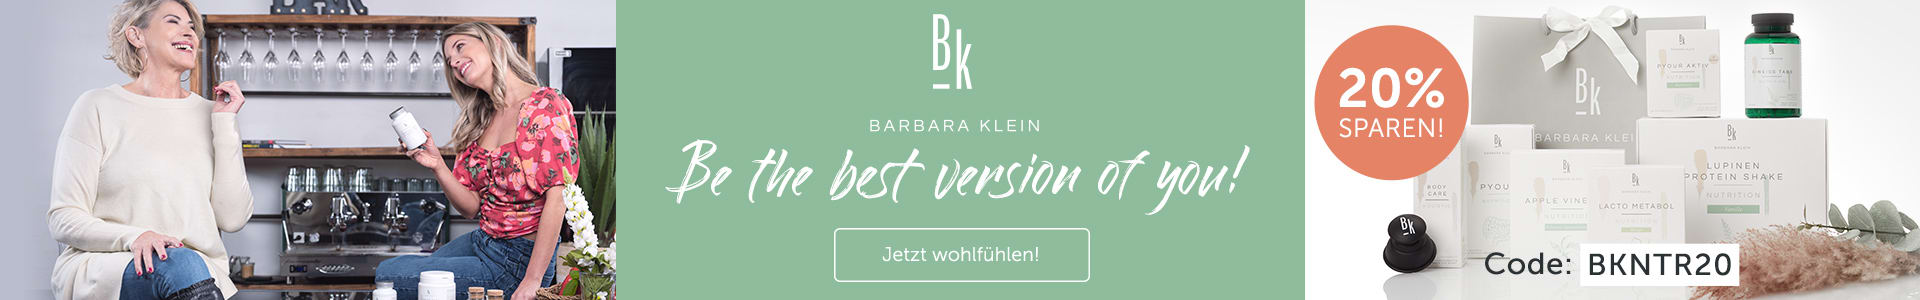 Be the best version of you - Sichere dir jetzt 20% Rabatt auf das Sortiment von BK Nutrition!